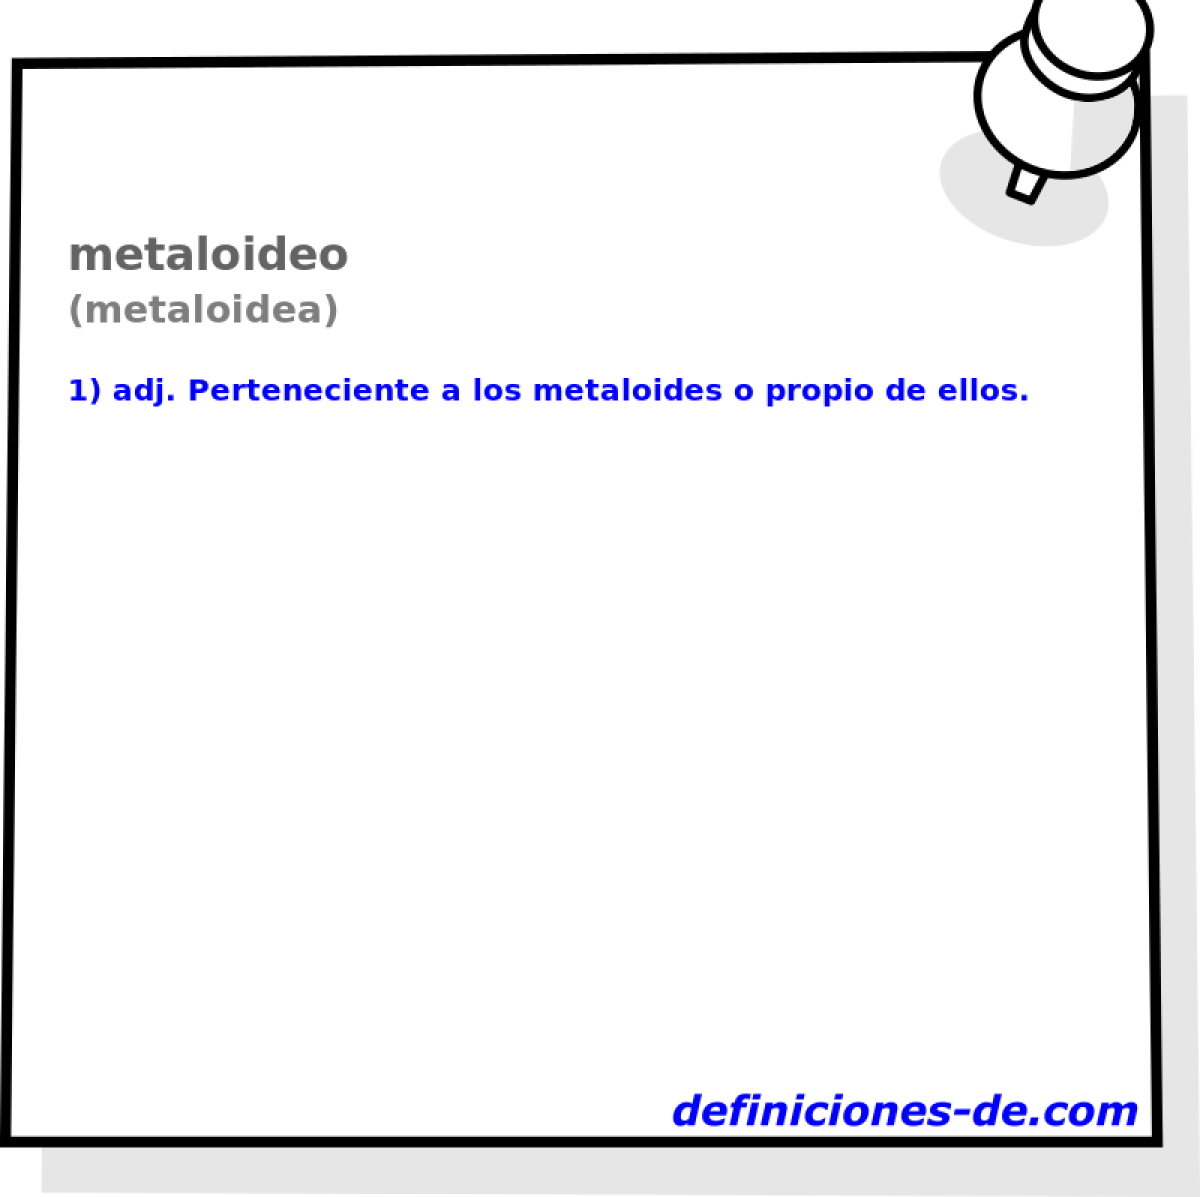 metaloideo (metaloidea)